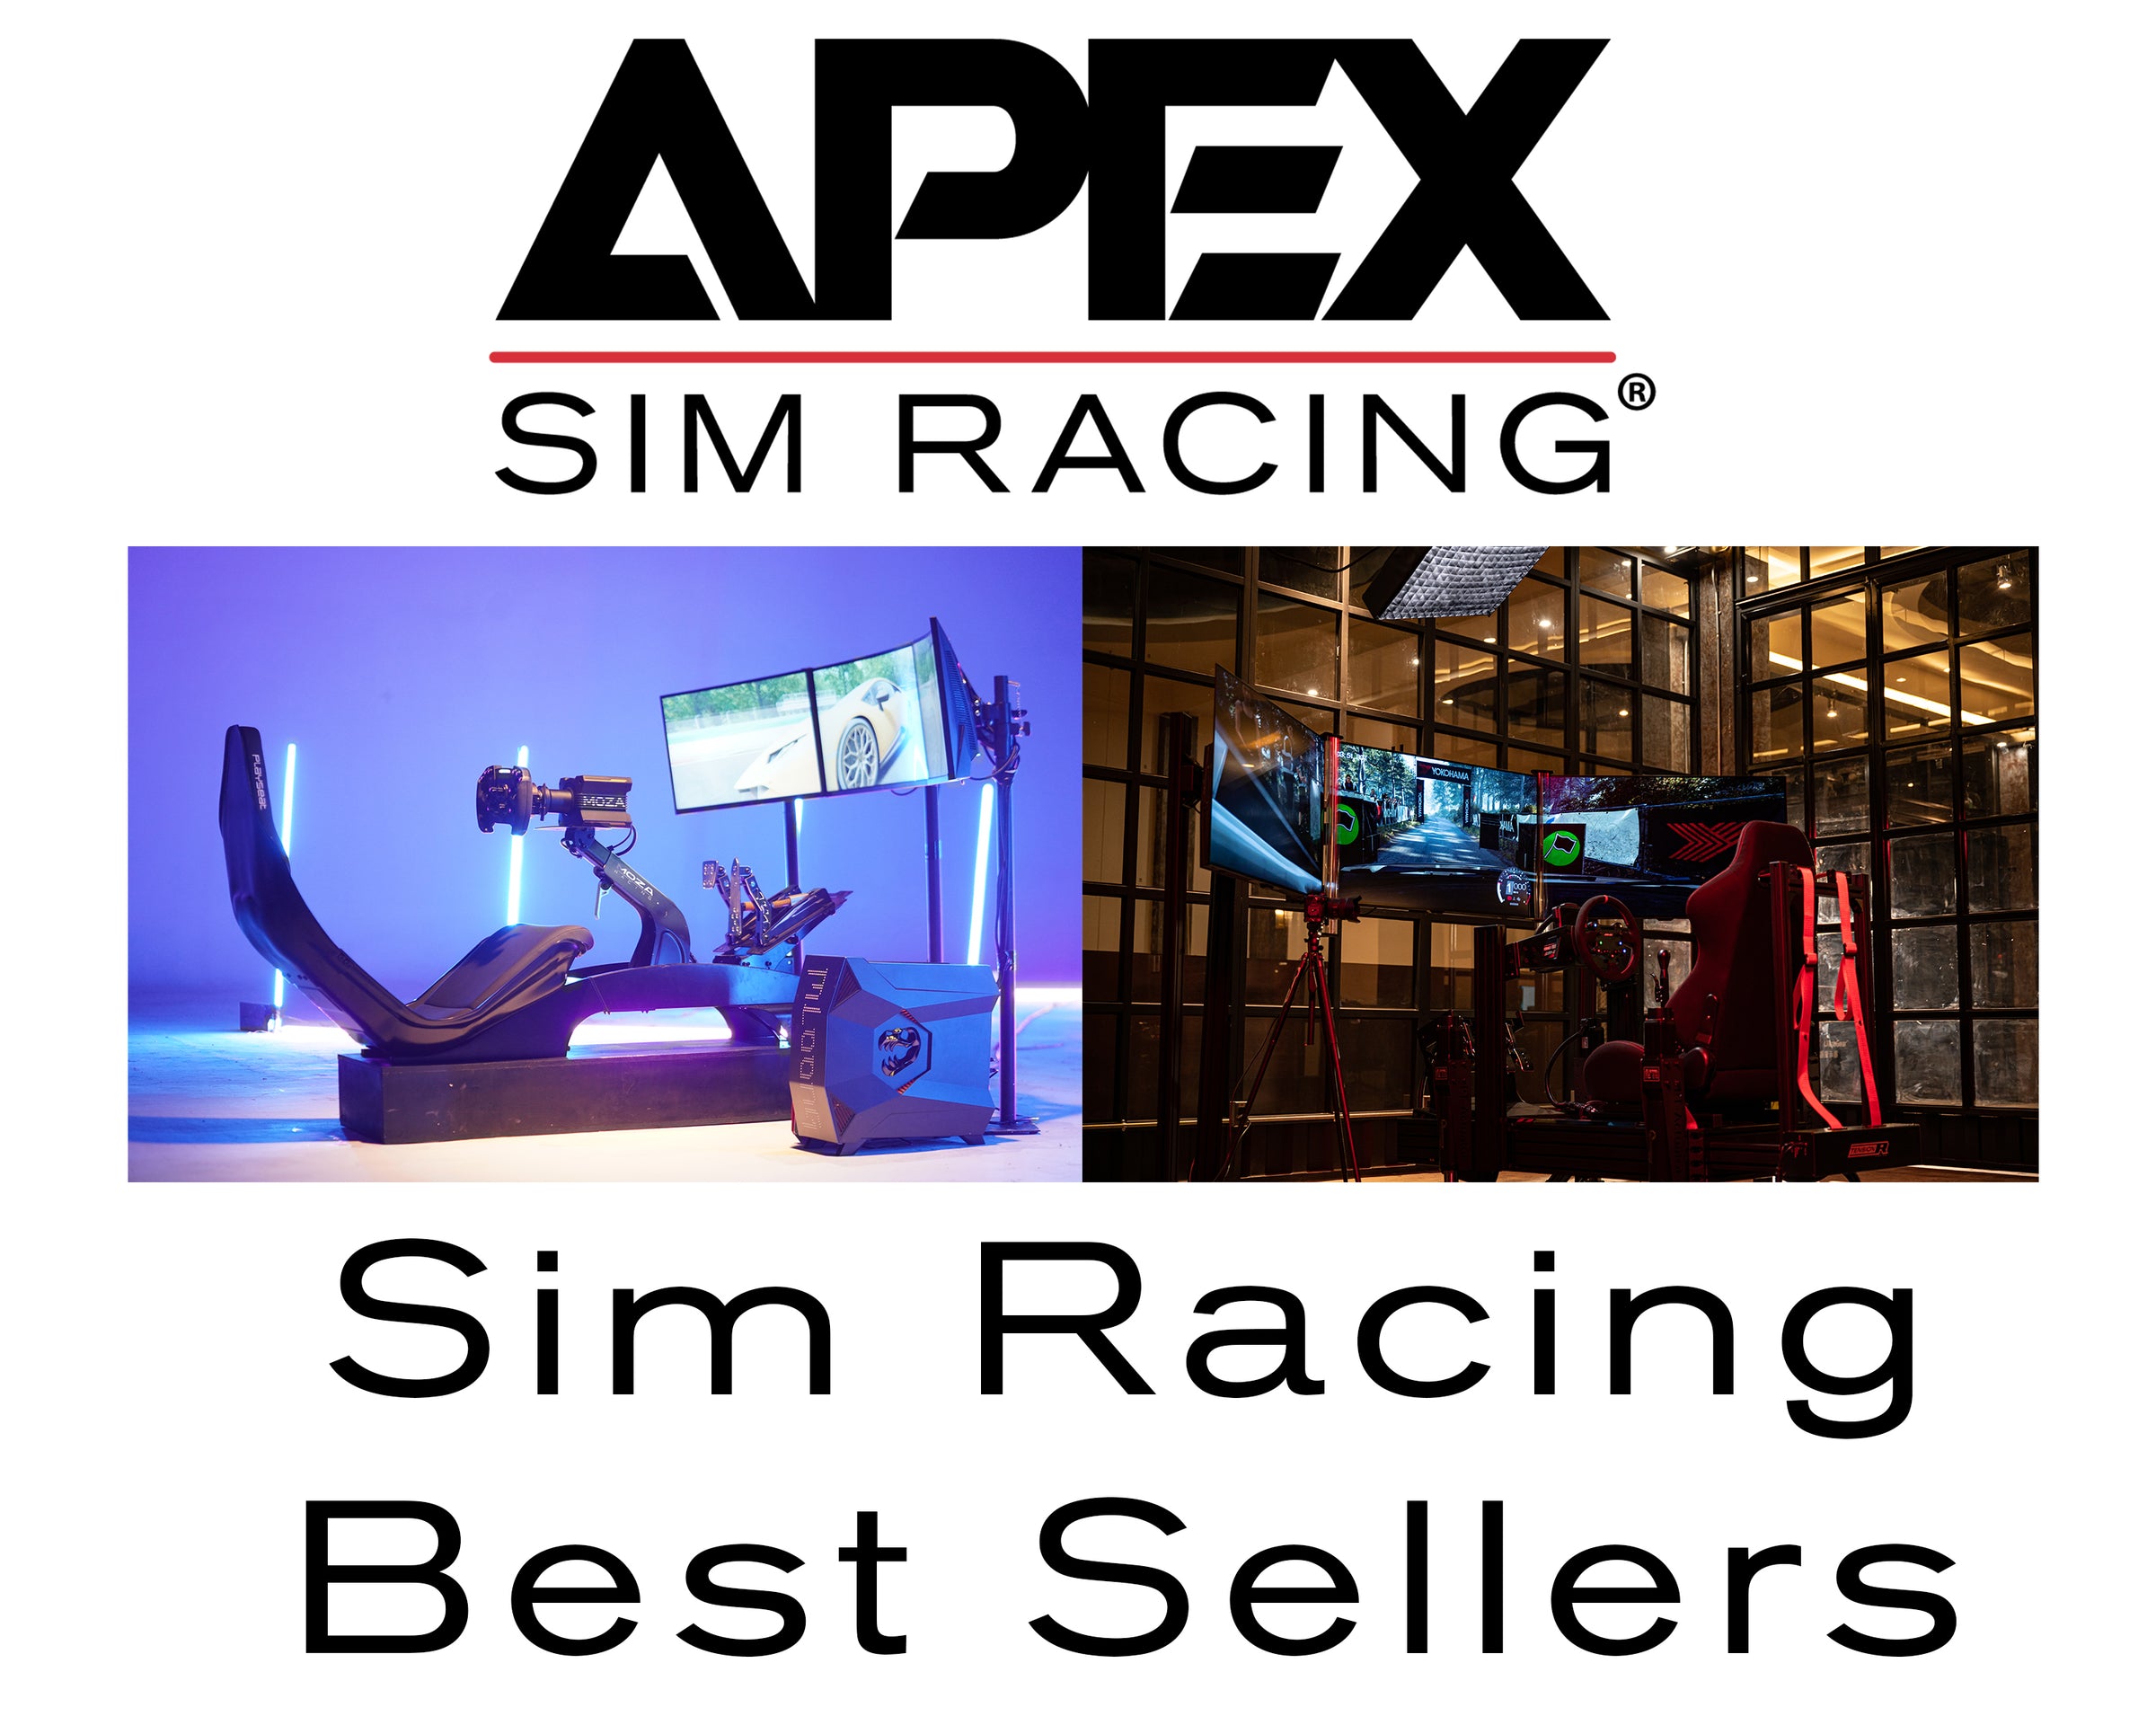 Apex Sim Racing - Sim Racing Best Sellers - Photo of 2 racing simulators